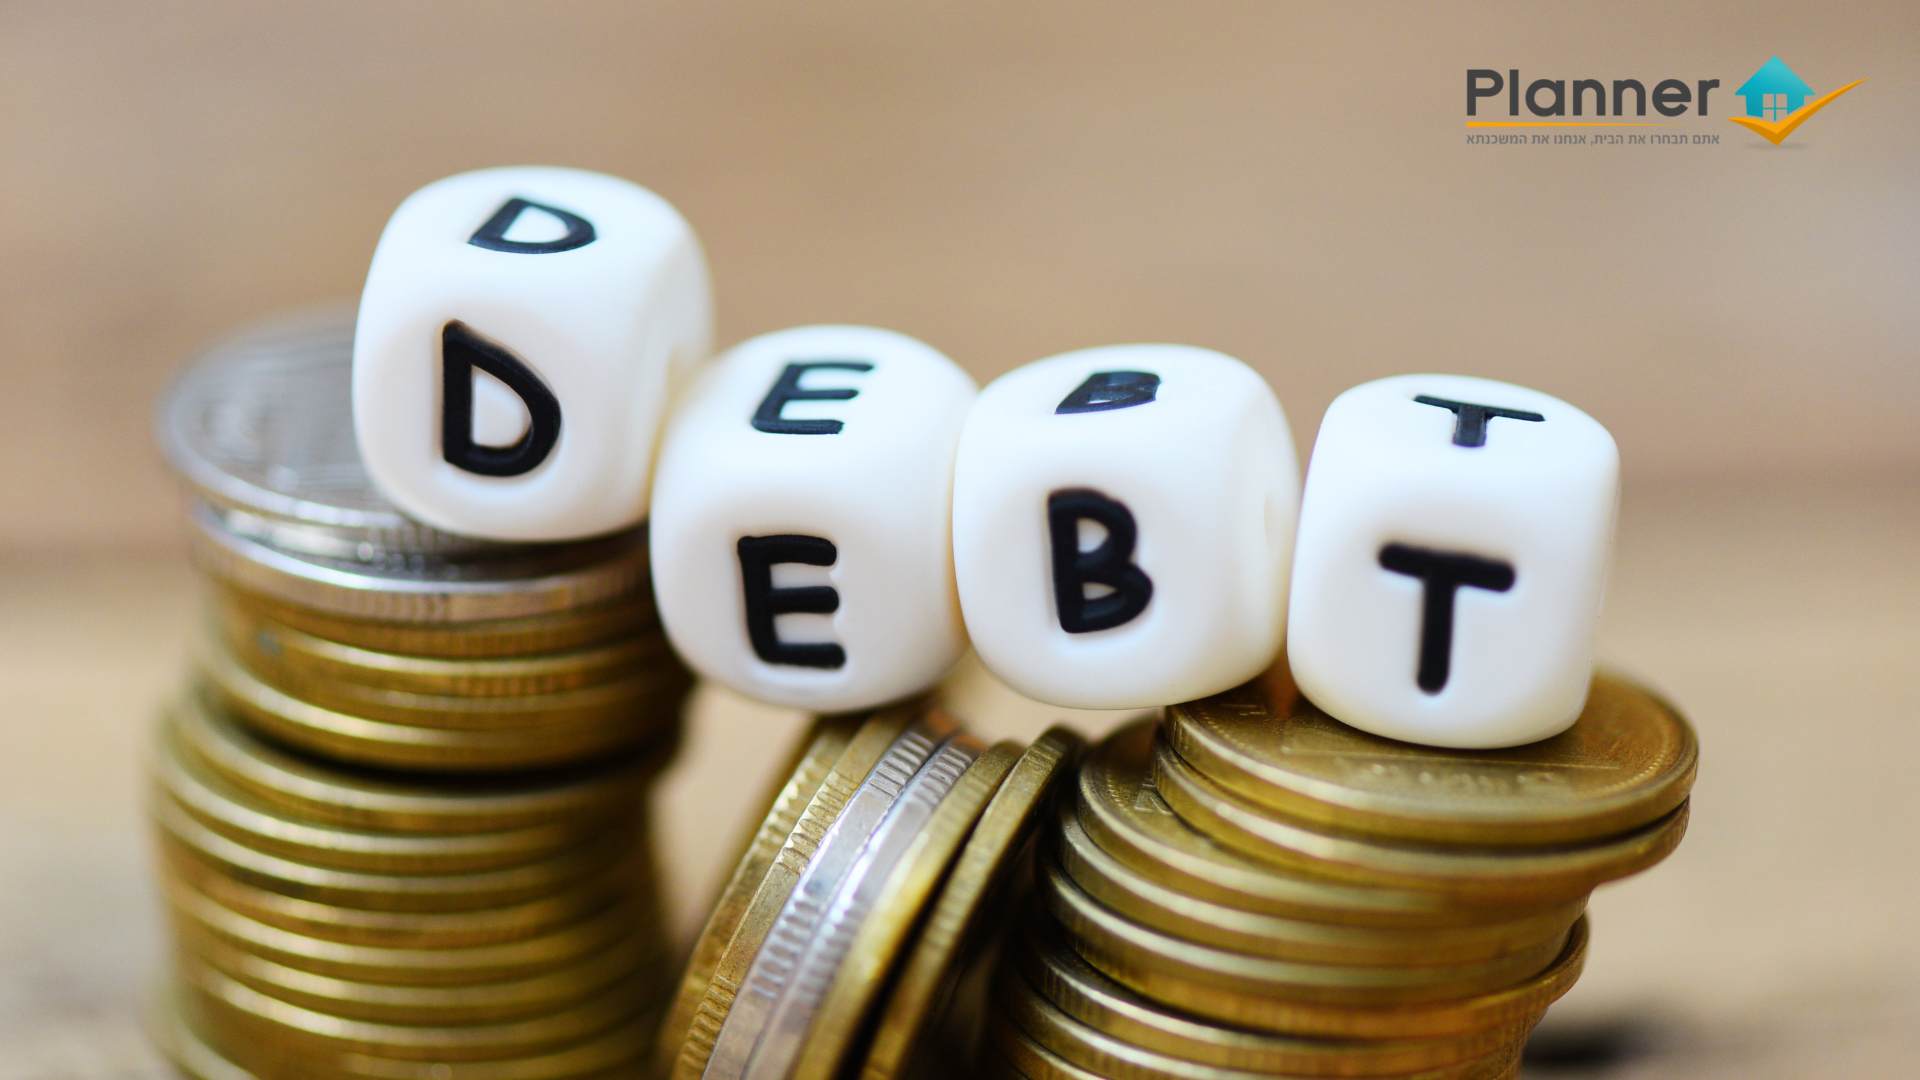 שימוש בהלוואה ליציאה ממעגל החובות